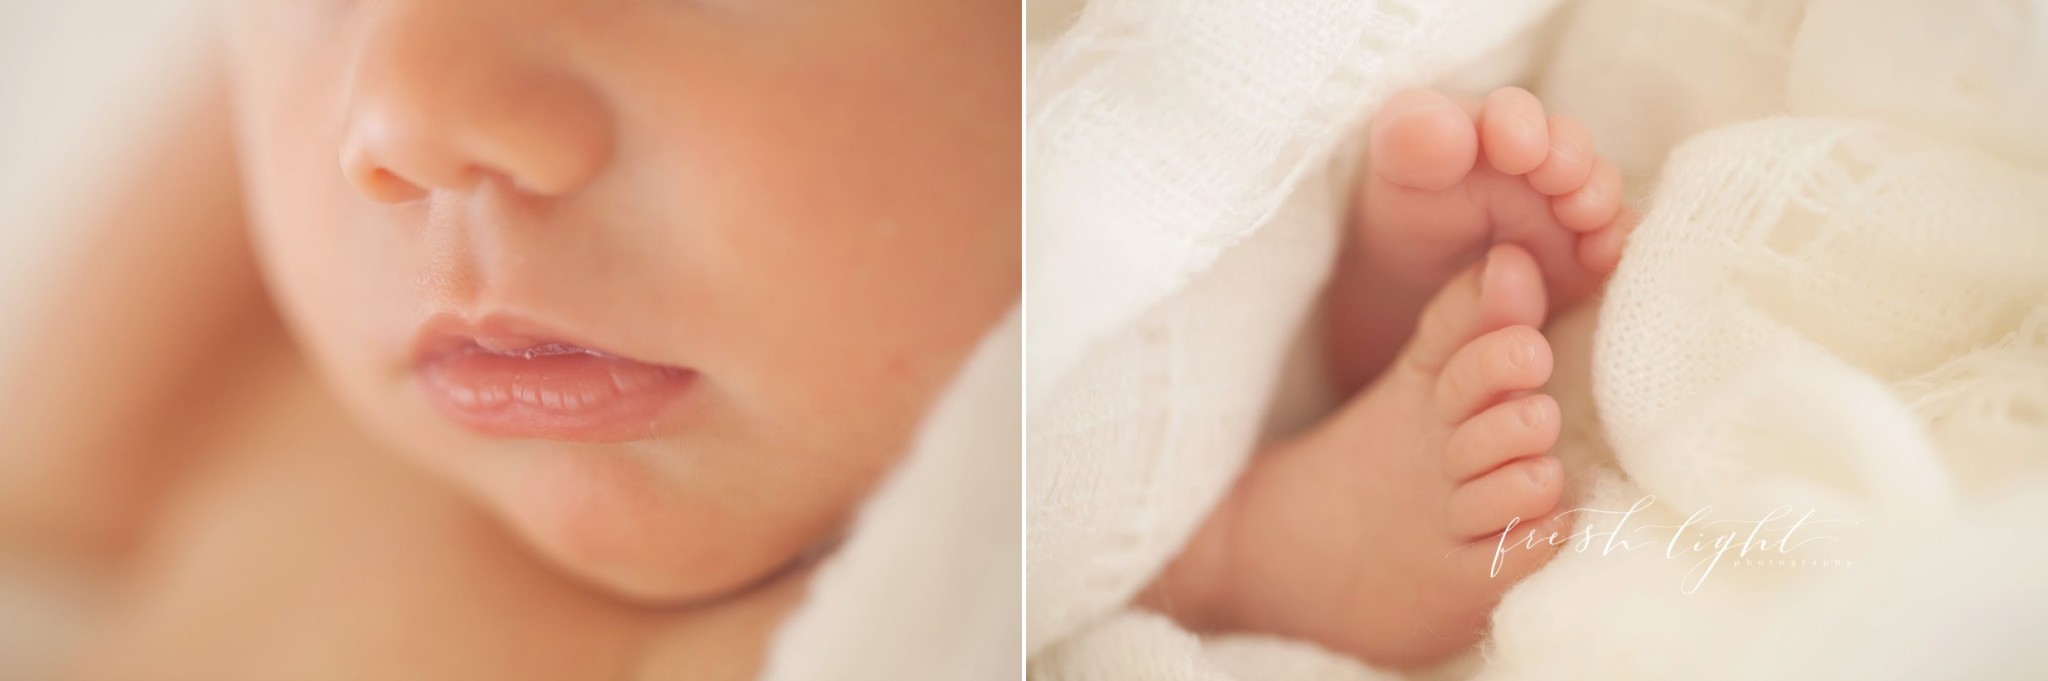  Houston newborn baby photographer